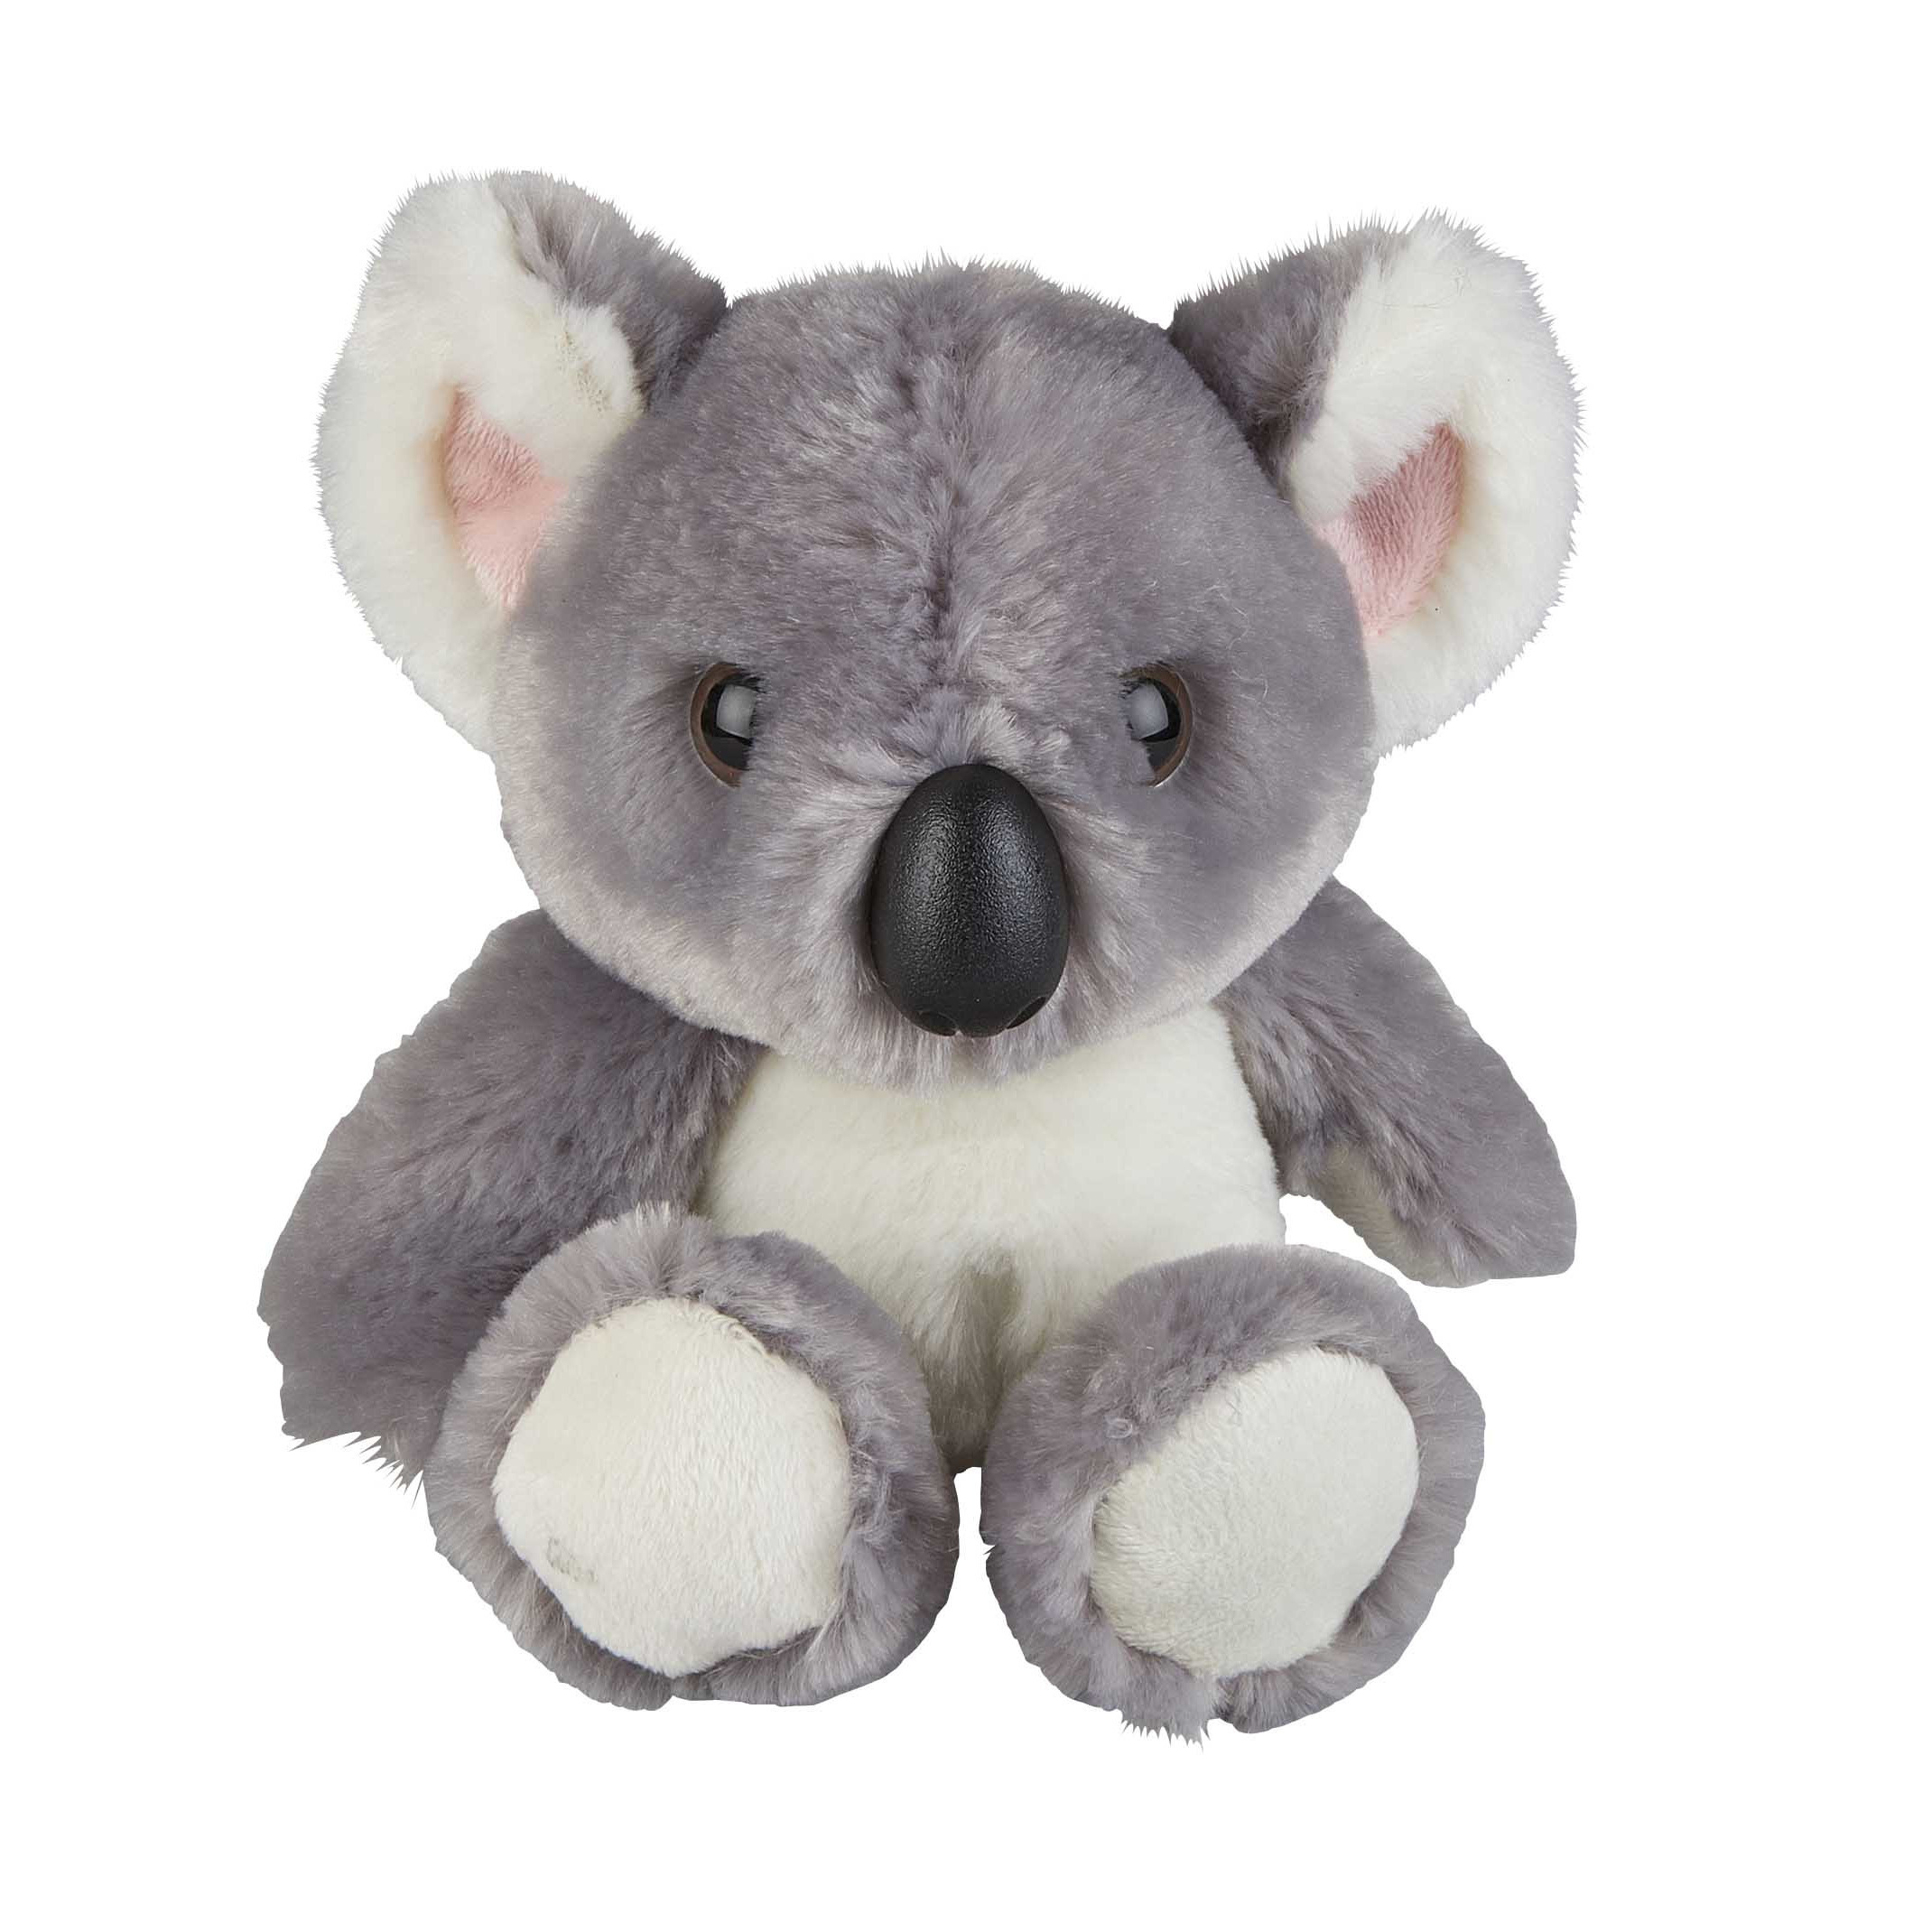 Pluche knuffel dieren Koala beertje 18 cm